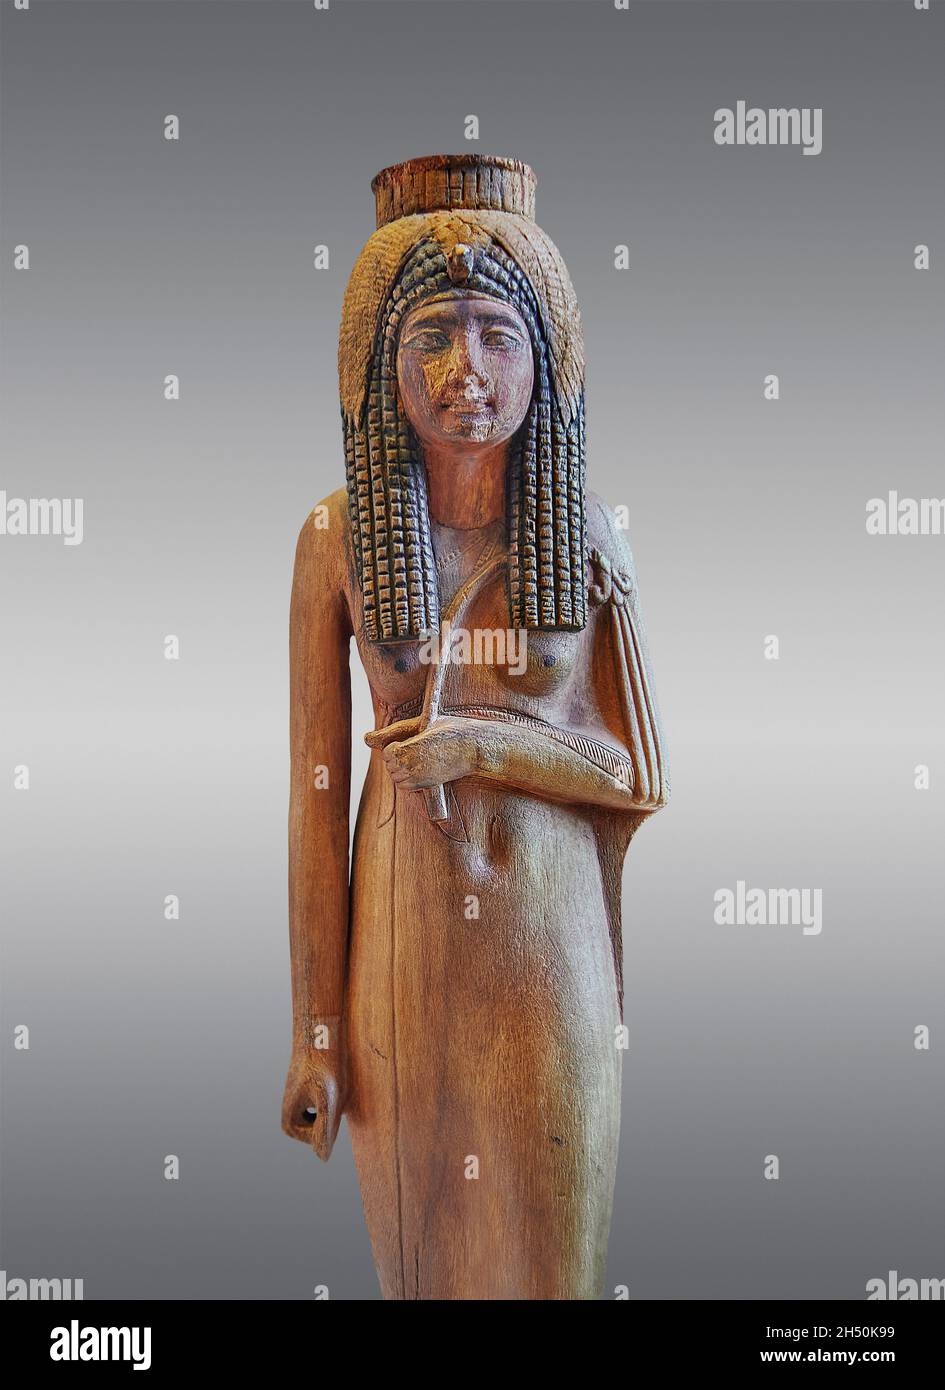 Bois égyptien la sculpture de la reine déifiée Ahmes Nefertari, 1279-1213 avant J.-C. 19e dynastie, a trouvé Deir el Medina, acacia.Musée du Louvre inv N 470.TH Banque D'Images